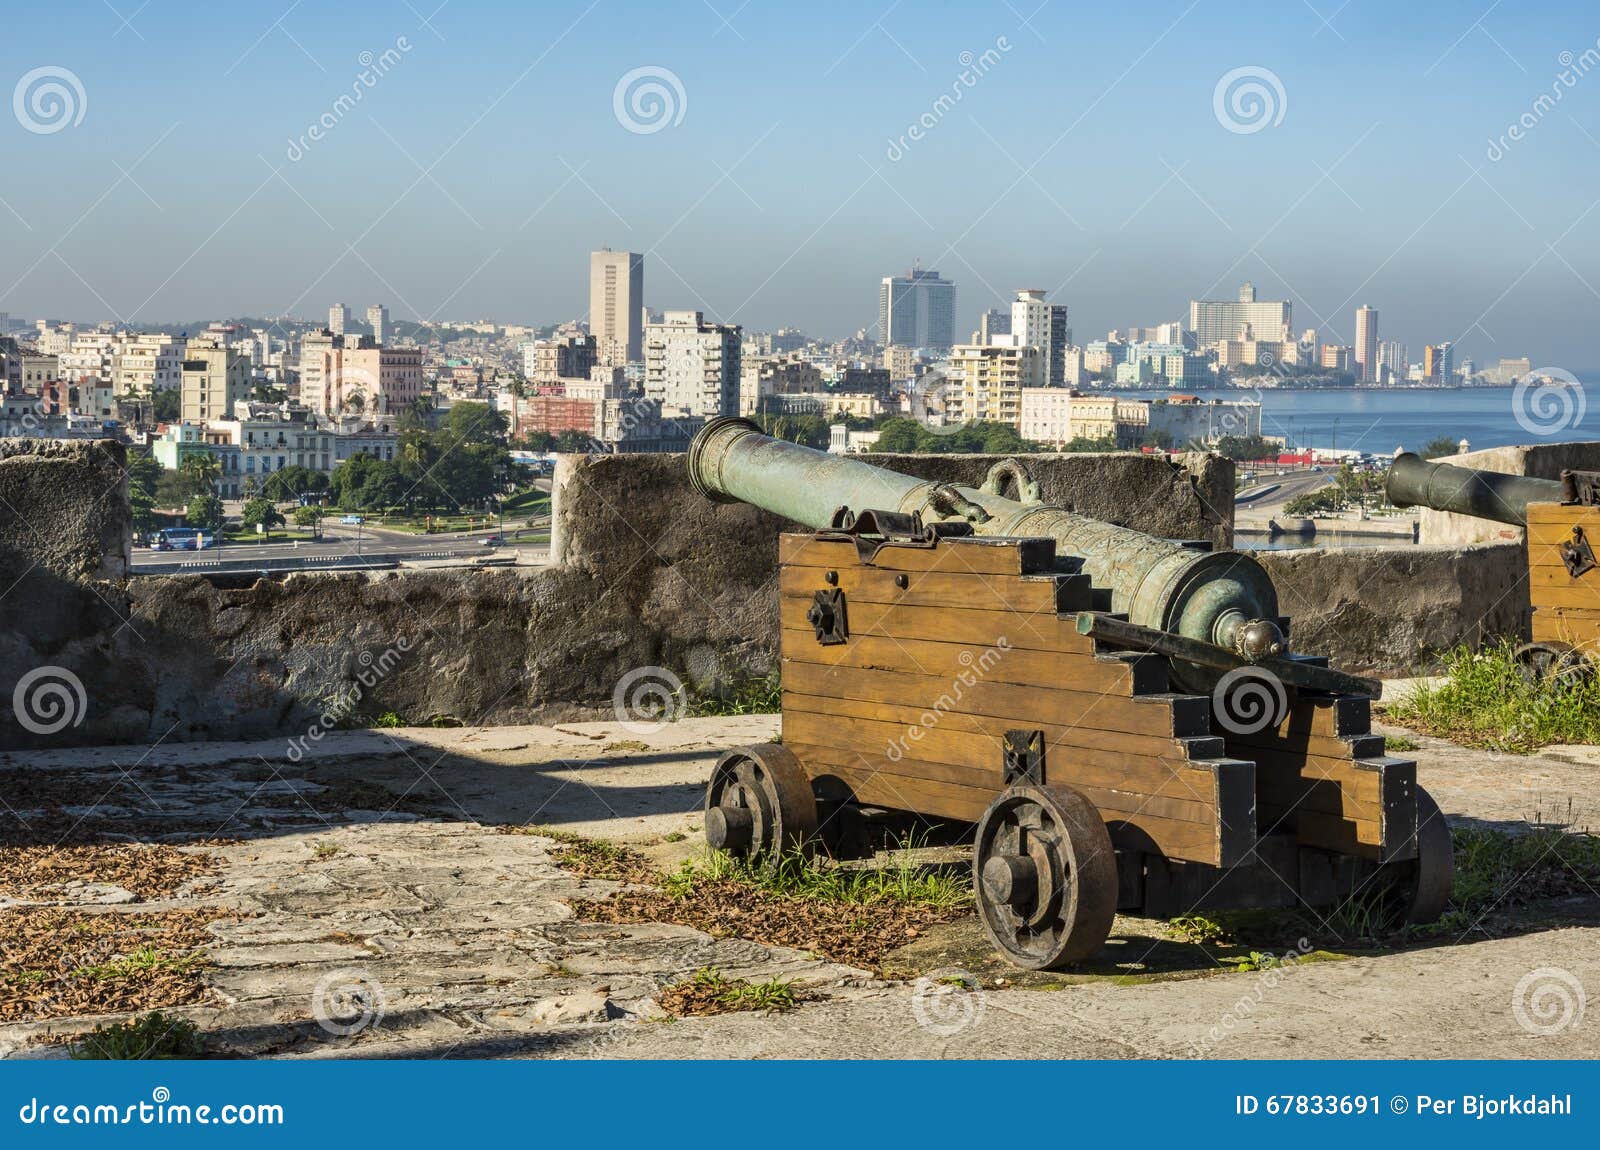 cannon at la cabaÃÂ±a havana